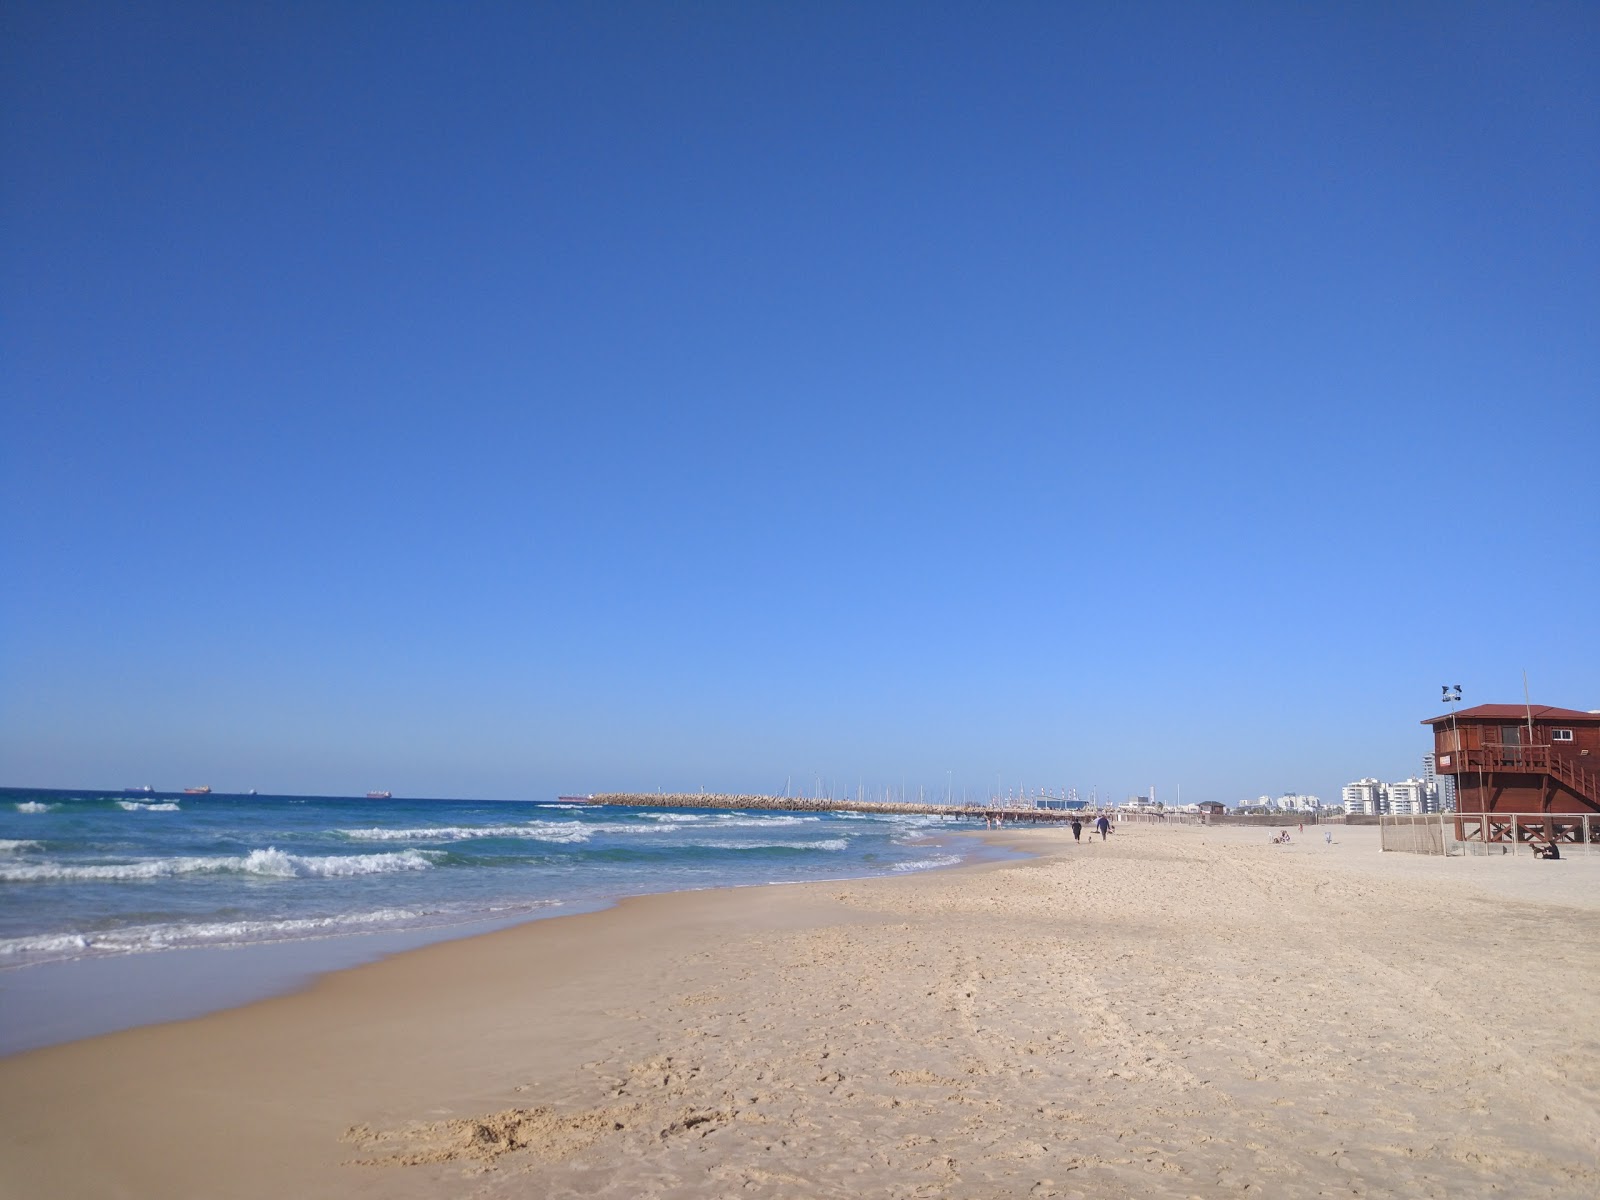 Fotografie cu Ashdod separate beach cu o suprafață de nisip fin strălucitor